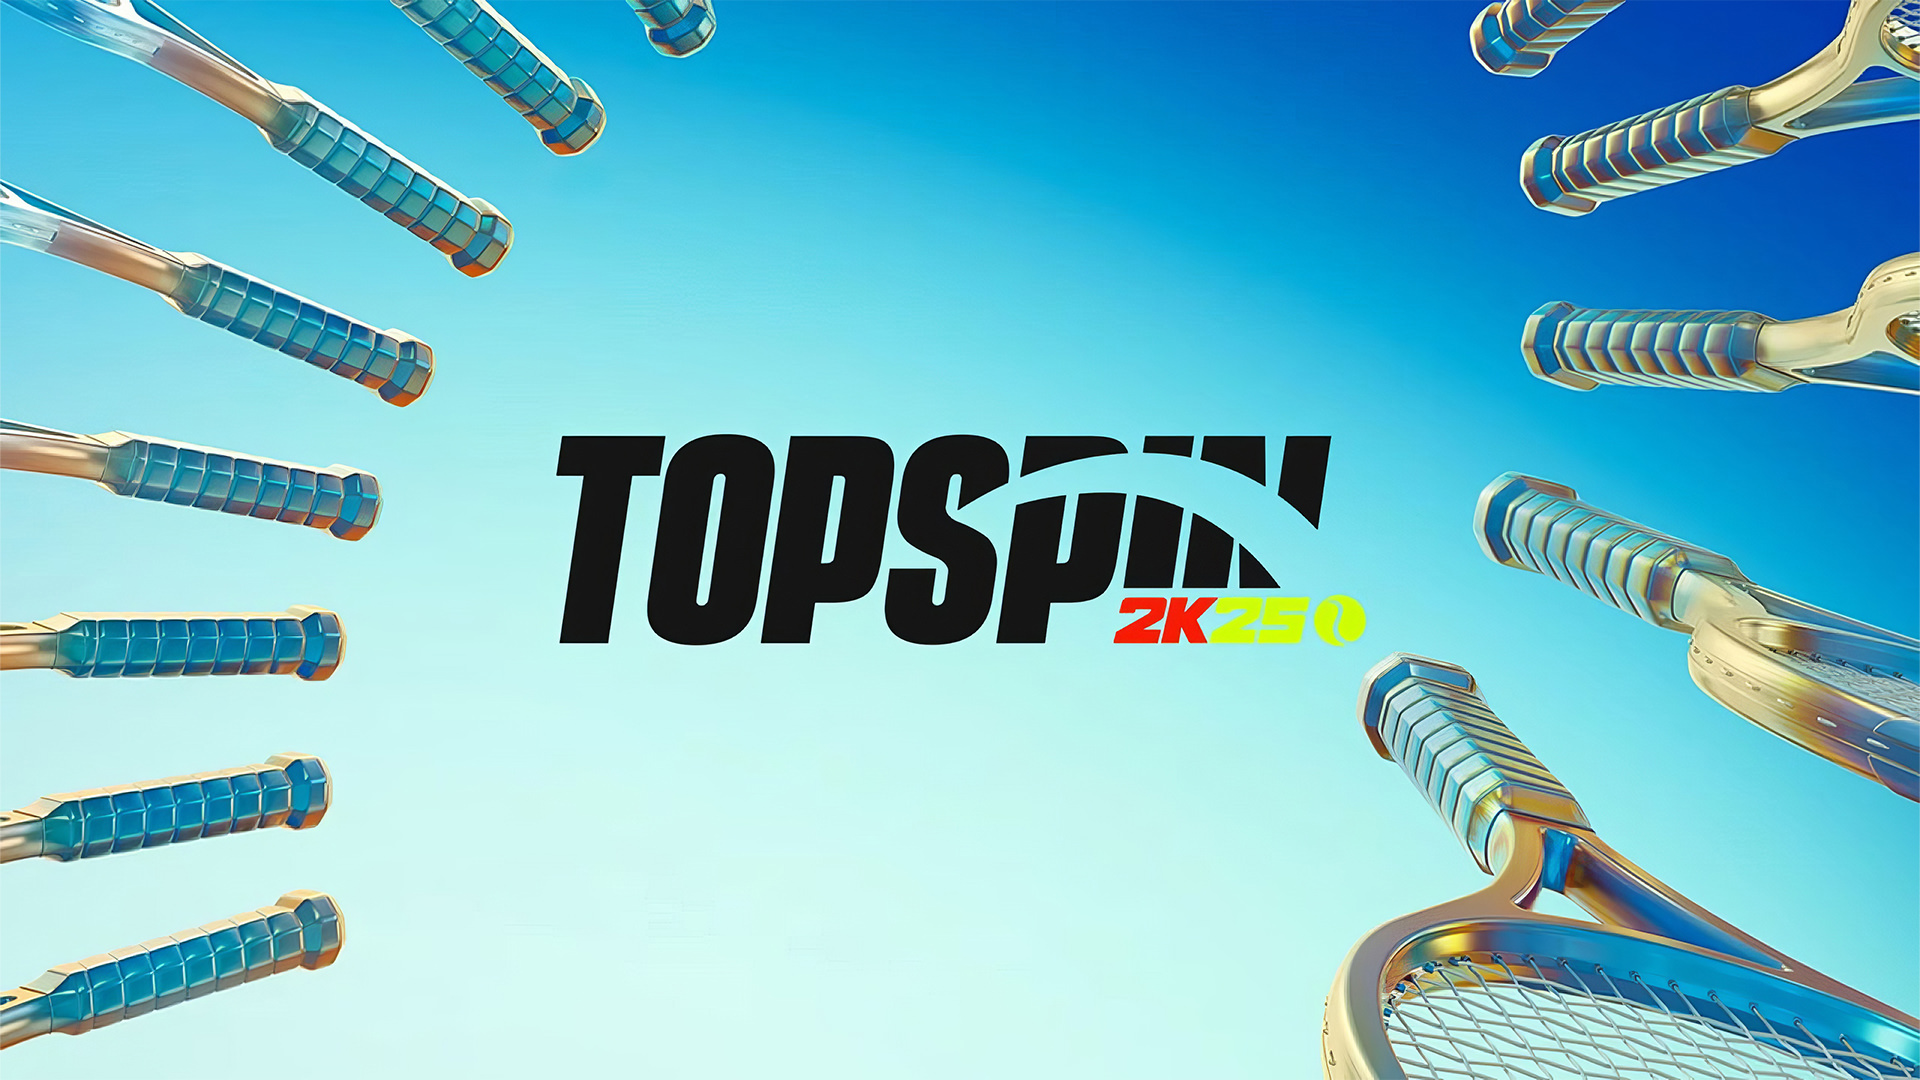 تاریخ عرضه بازی TopSpin 2K25 با انتشار تریلر جدید مشخص شد 